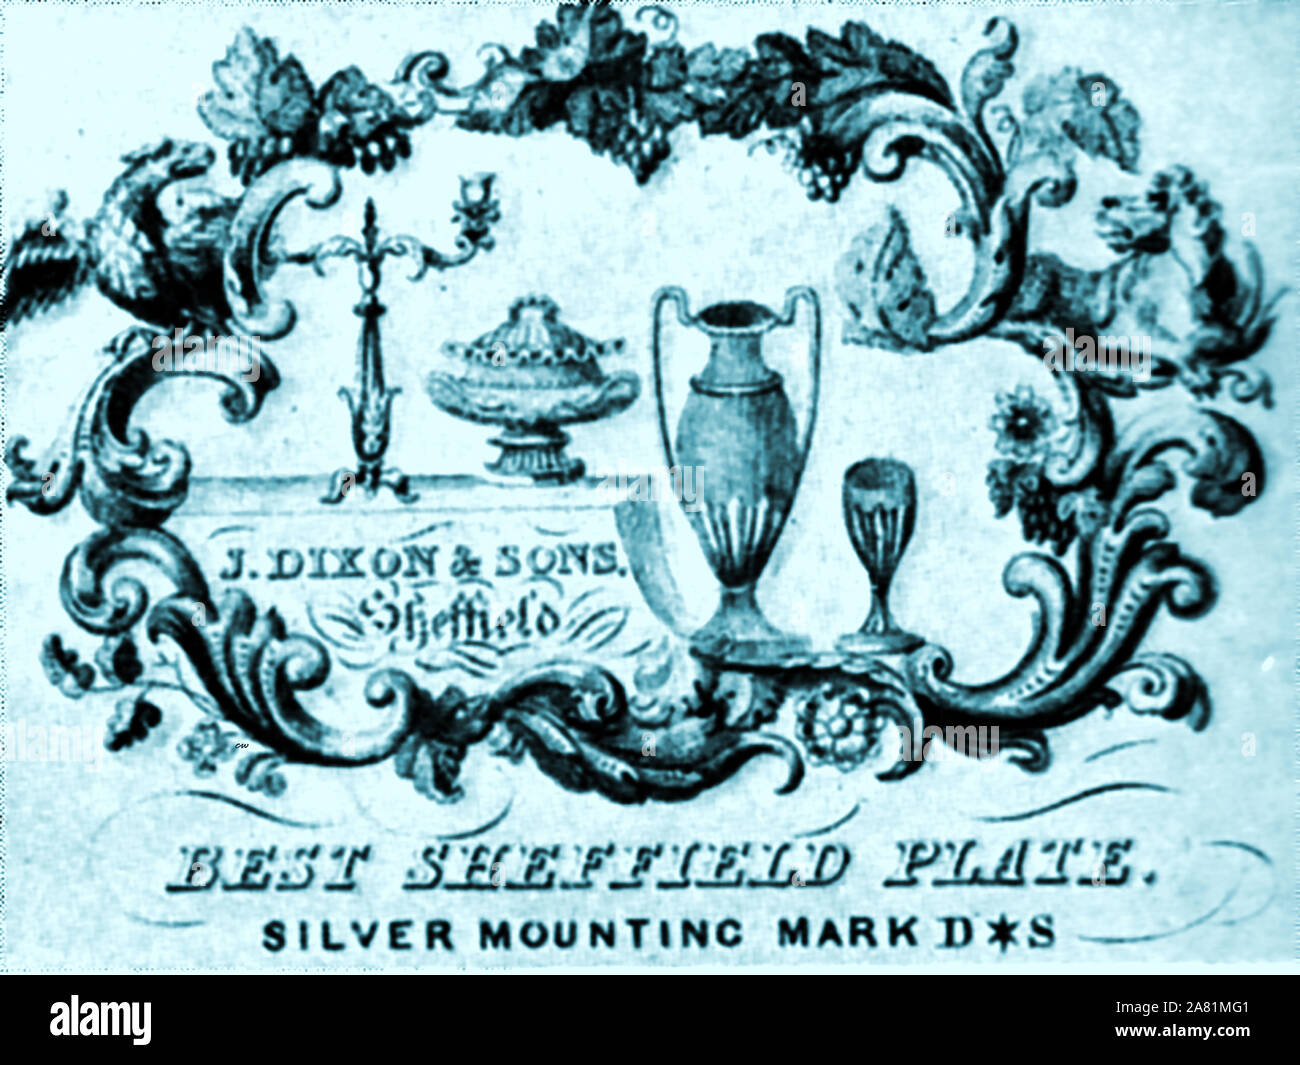 L'industrie de Sheffield Silver Plaque - marqueur de J Dixon & Sons. Une de leurs premières marques est une trompette avec une bannière accrochée à elle. Ils ont été fondé en 1806 à Sheffield et devint l'un des principaux fabricants britanniques dans la révolution industrielle du xixe siècle. Ils étaient également bien connu en tant que fabricant des Etains ware. Banque D'Images